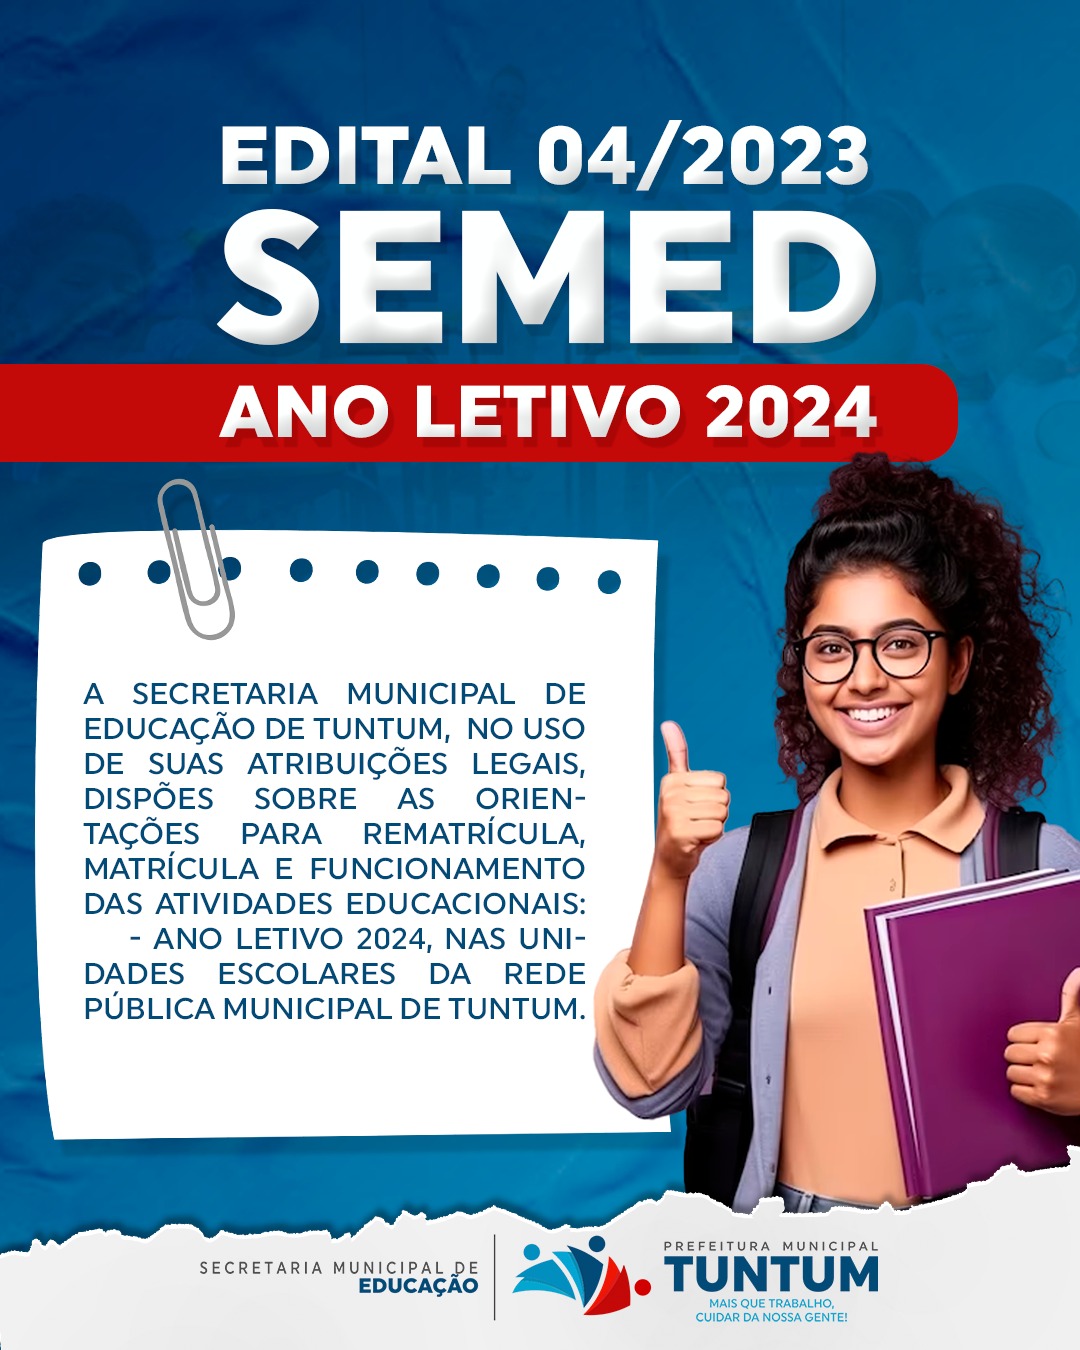 EDITAL 04/2023, SEMED: ORIENTAÇÕES PARA REMATRÍCULA, MATRÍCULA E ATIVIDADES EDUCACIONAIS